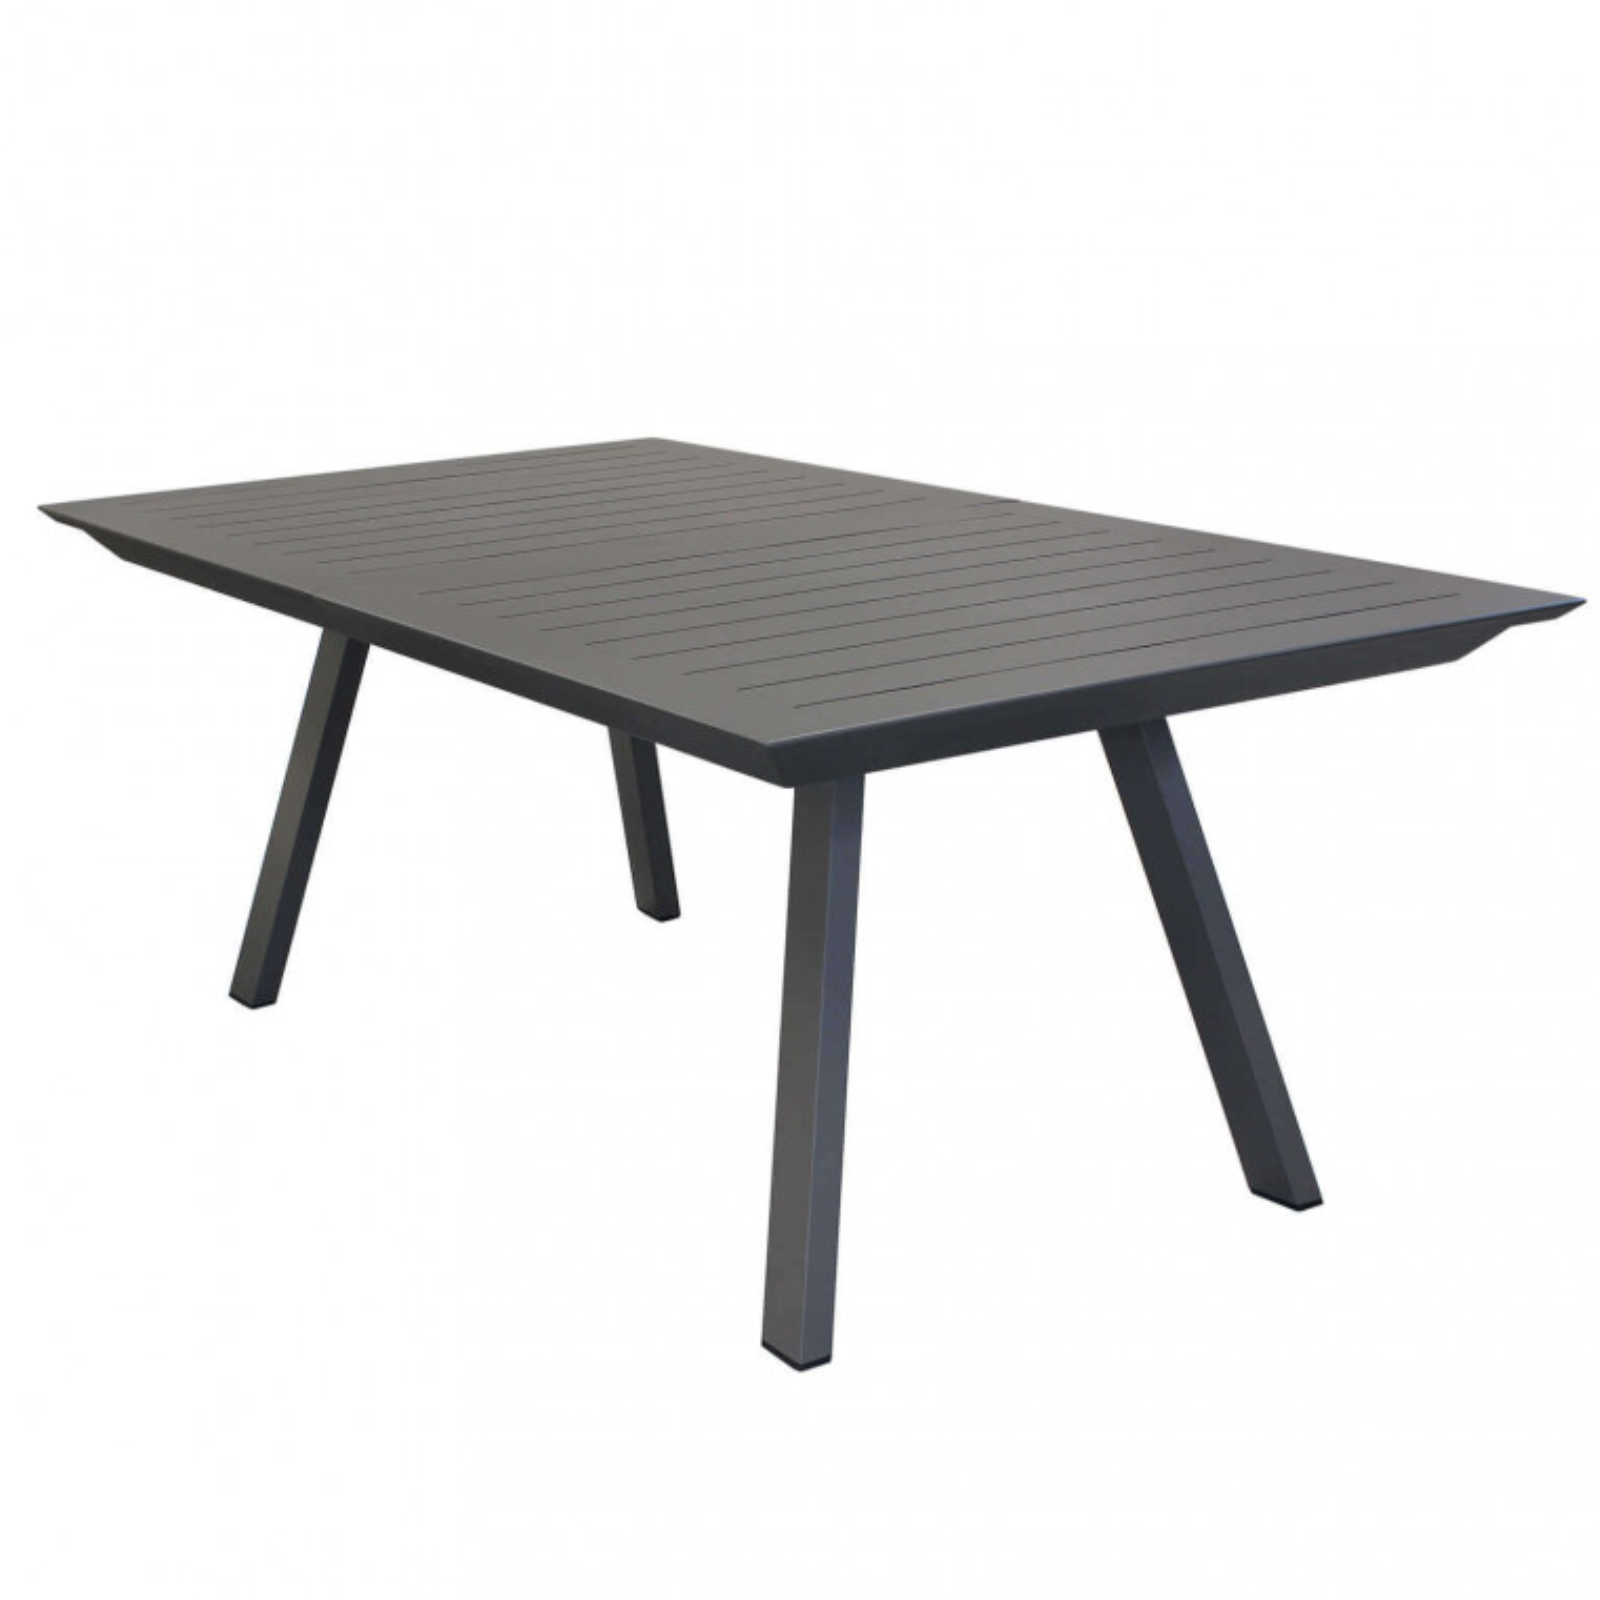 Tavolo allungabile 200/300 design moderno in alluminio antracite da esterno o interno - Zante